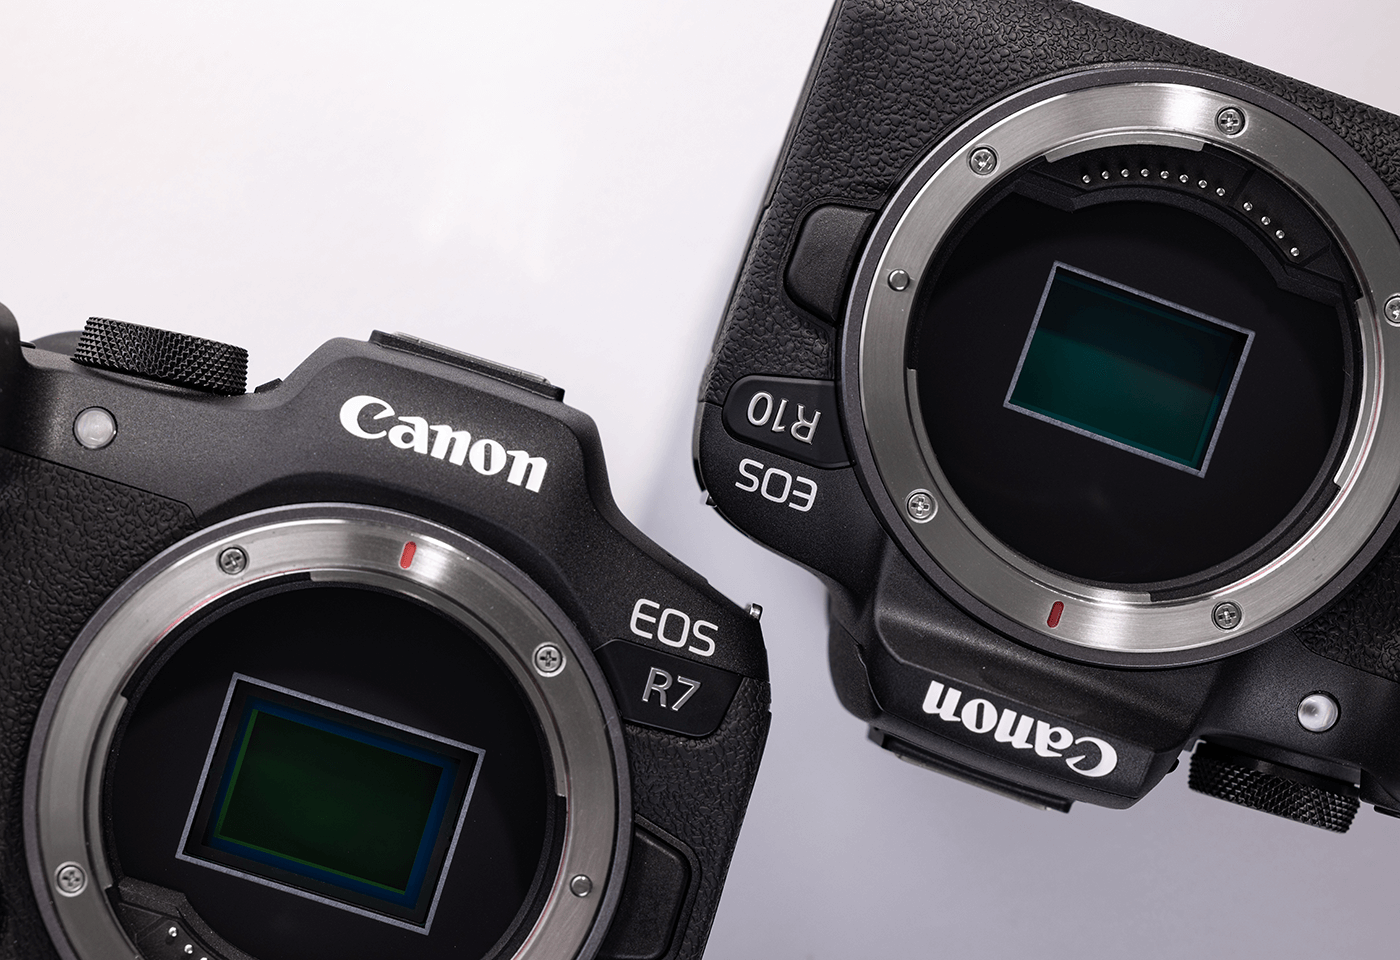 Canon EOS R7 vs R10 - The 10 Main Differences - Mirrorless Comparison